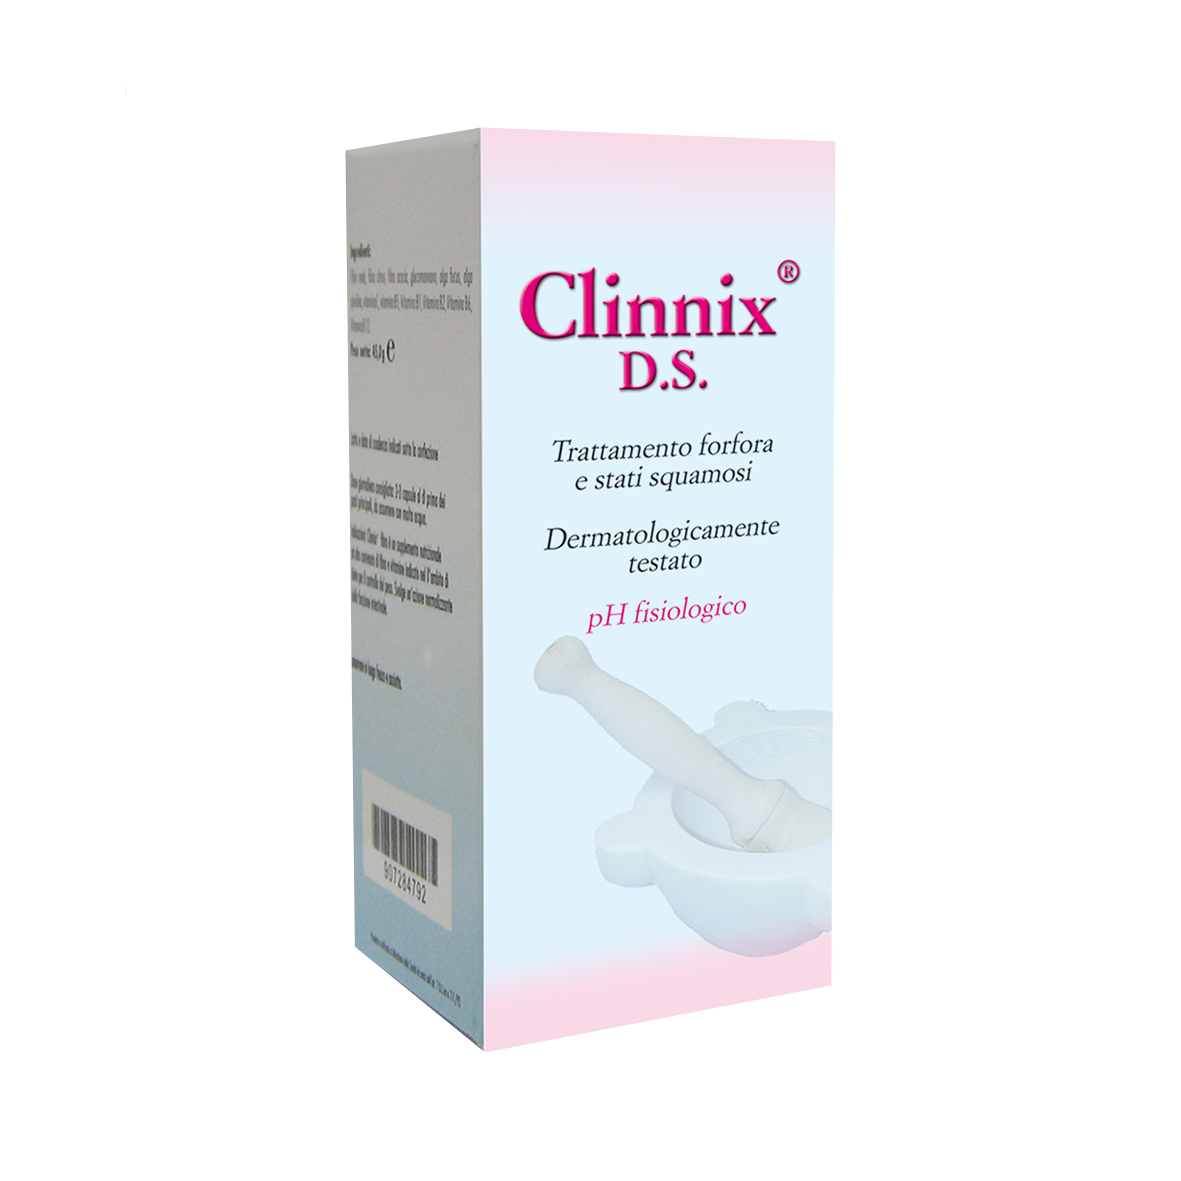 Image of Clinnix(R) D.S. Abbate Gualtiero 200ml